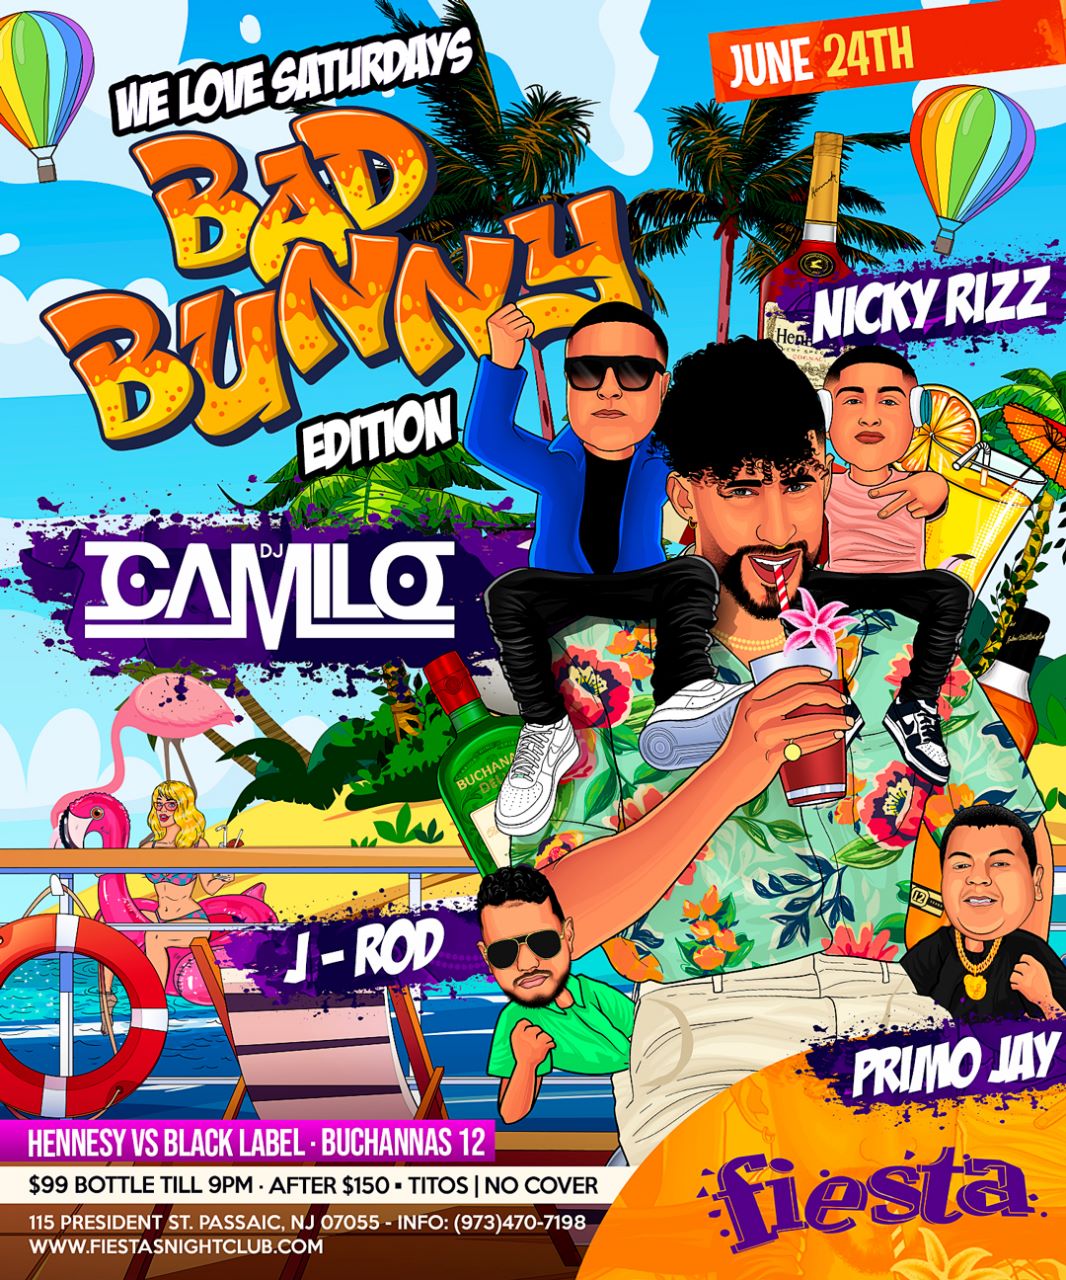 BAD BUNNY EDITION WITH DJ CAMILO, NICKY RIZZ, J-ROD, PRIMO JAY